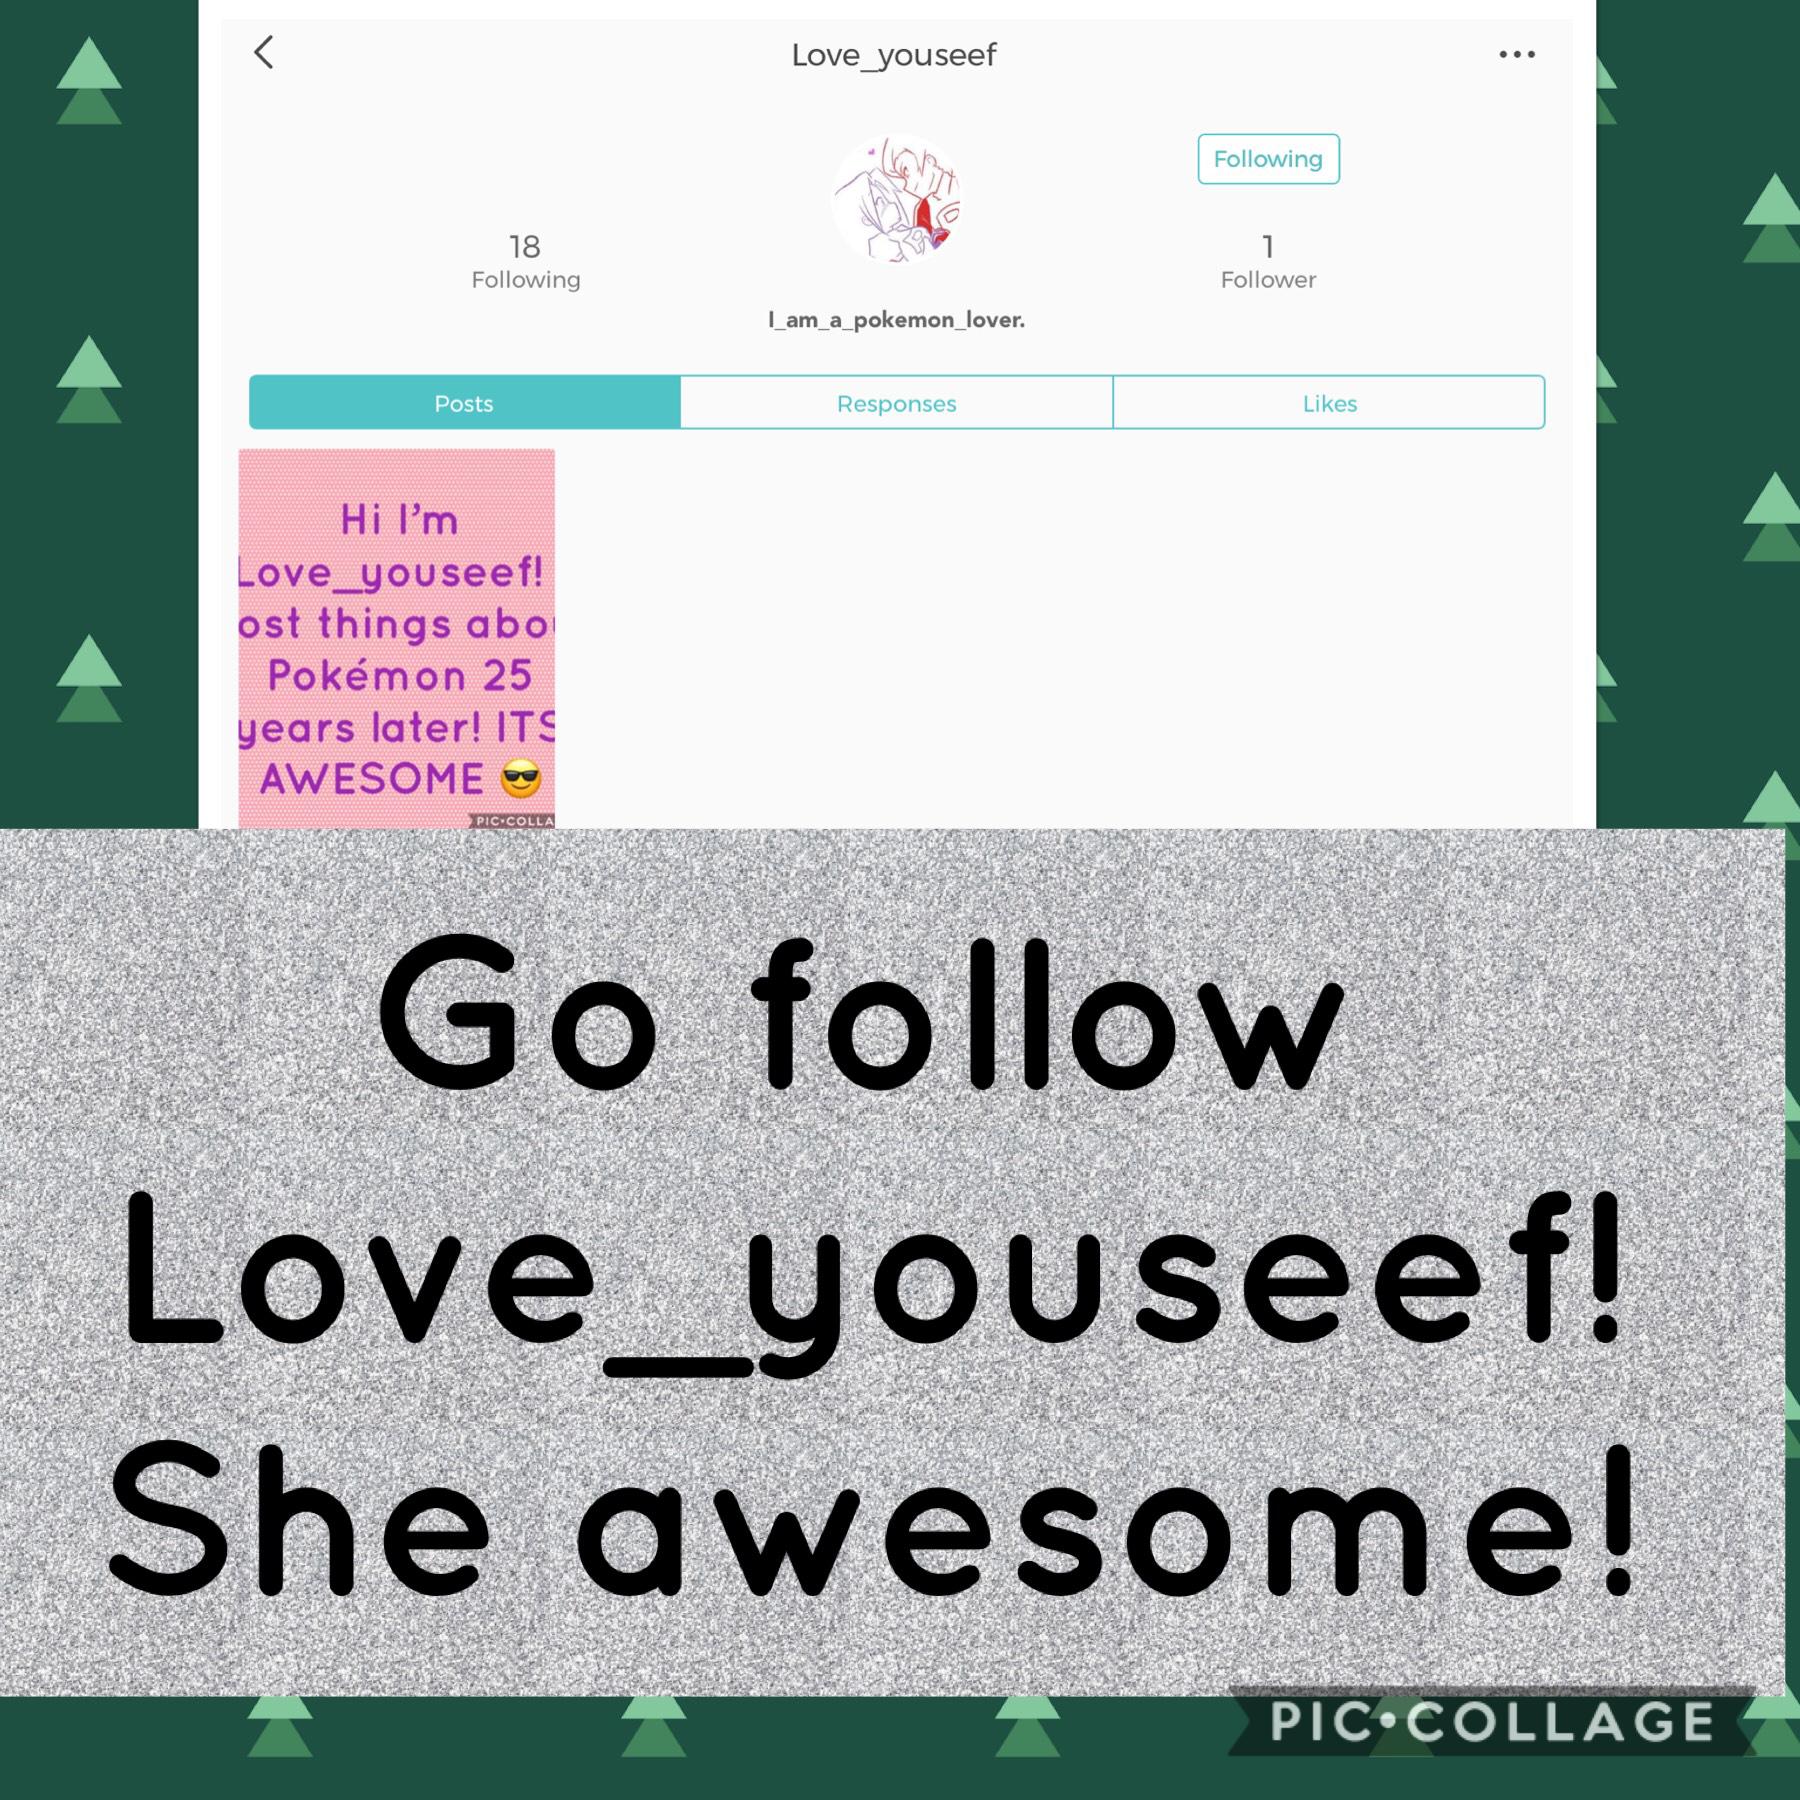 Go follow her!